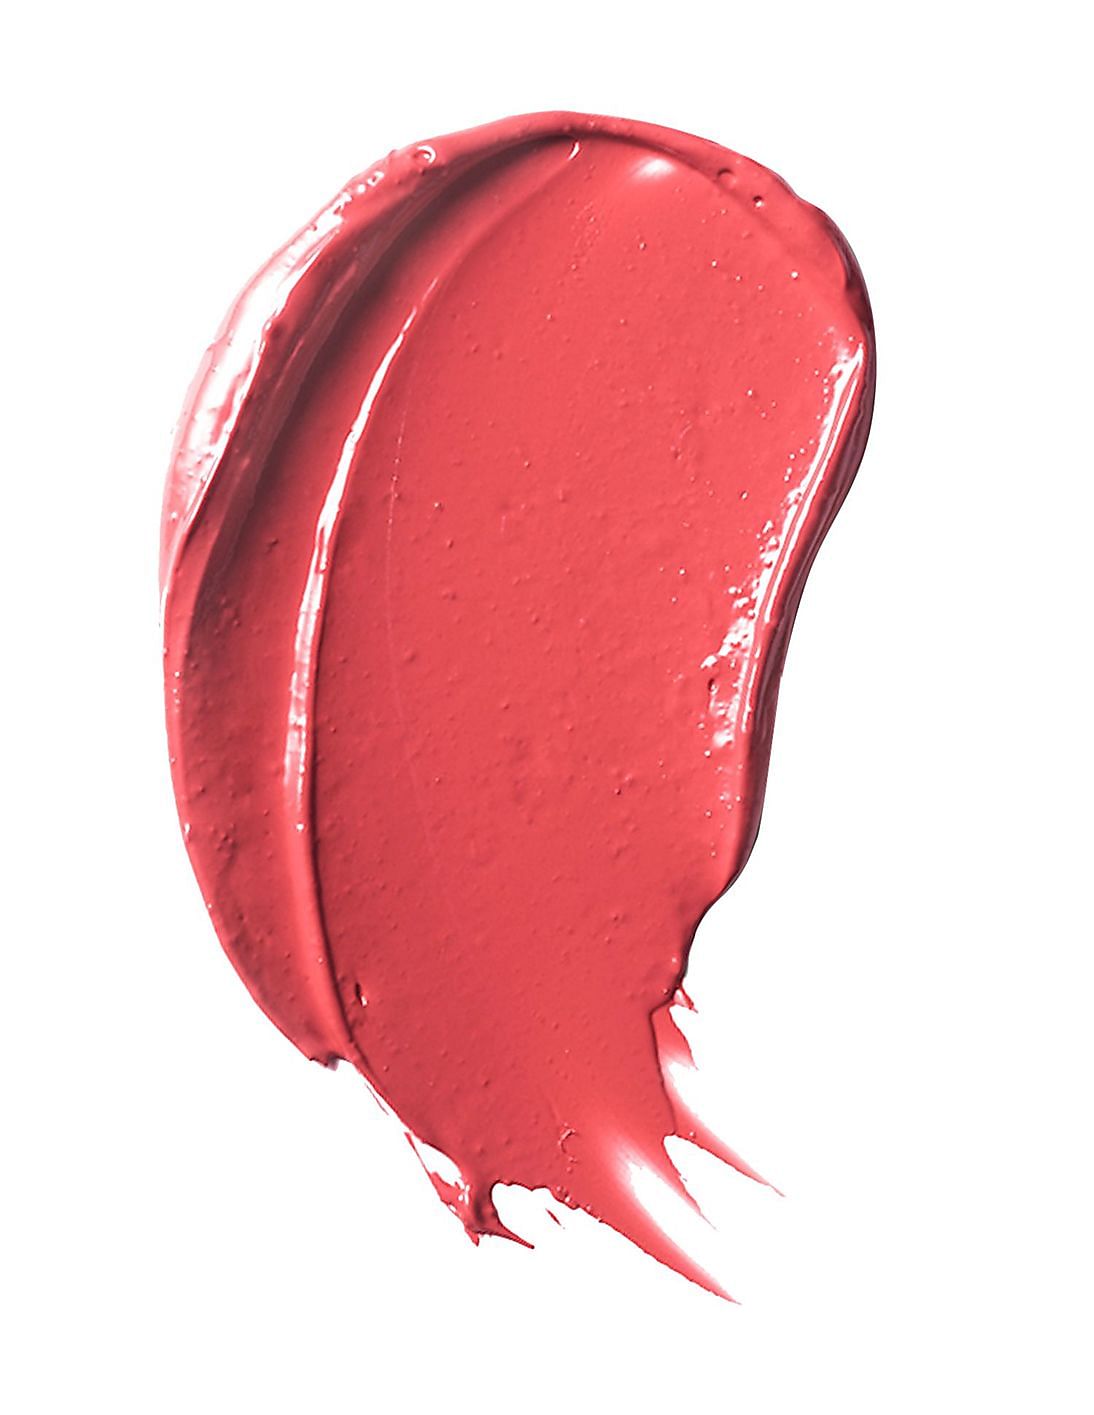 Son môi dưỡng ẩm Estee Lauder Pure Color Envy Sculpting Lipstick